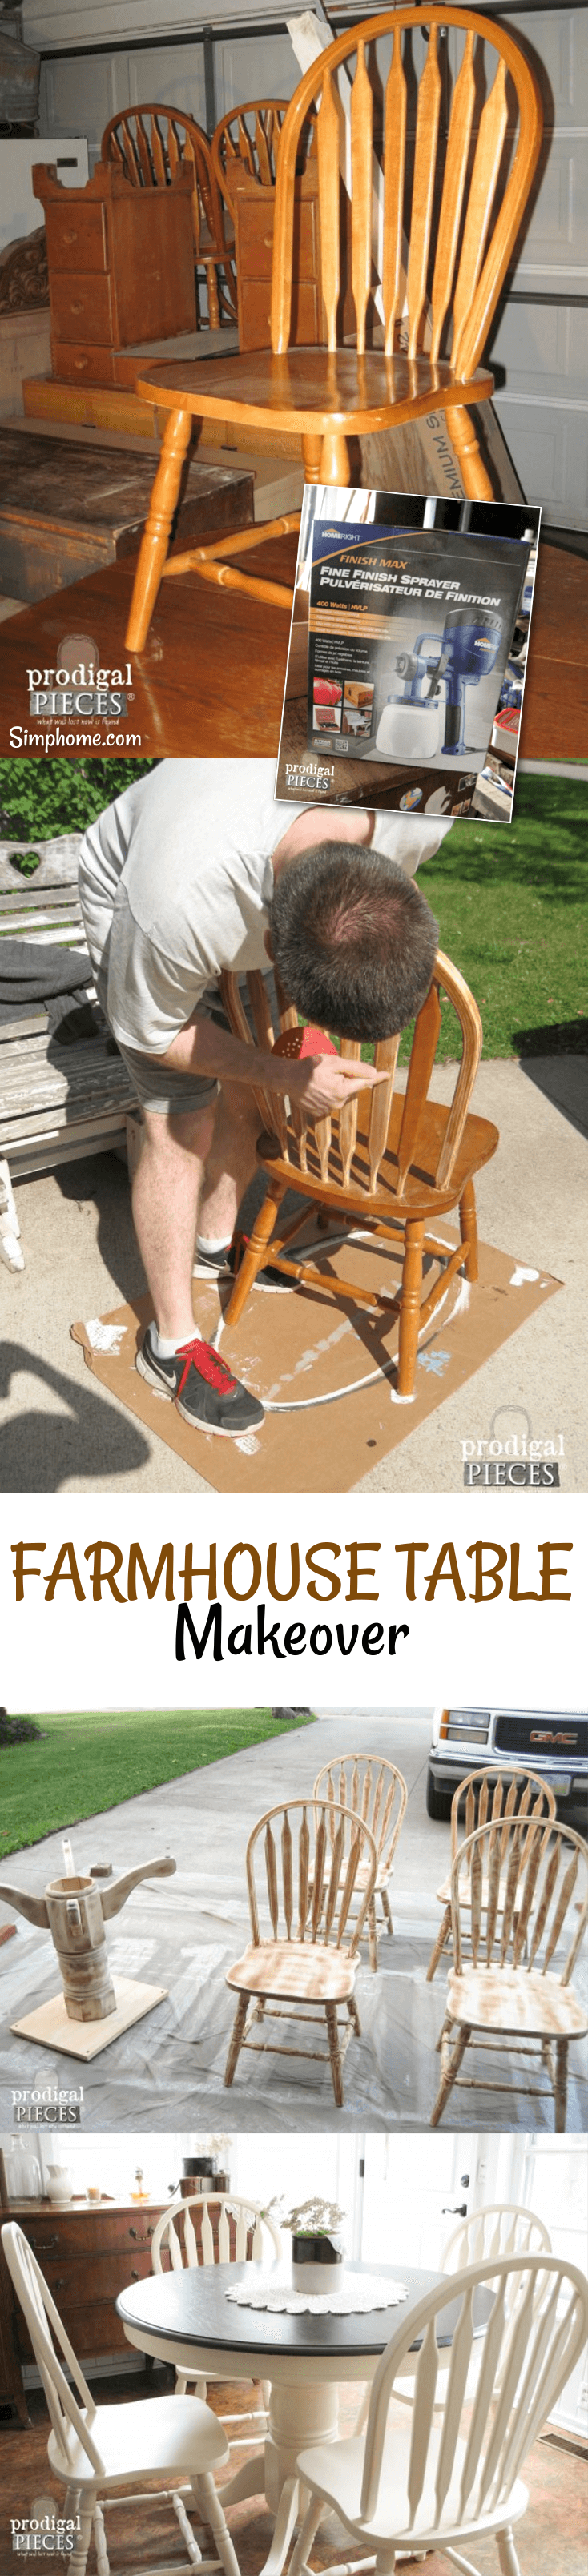 Farmhouse Table Makeover with HomeRight Sprayer 4 simphome com p